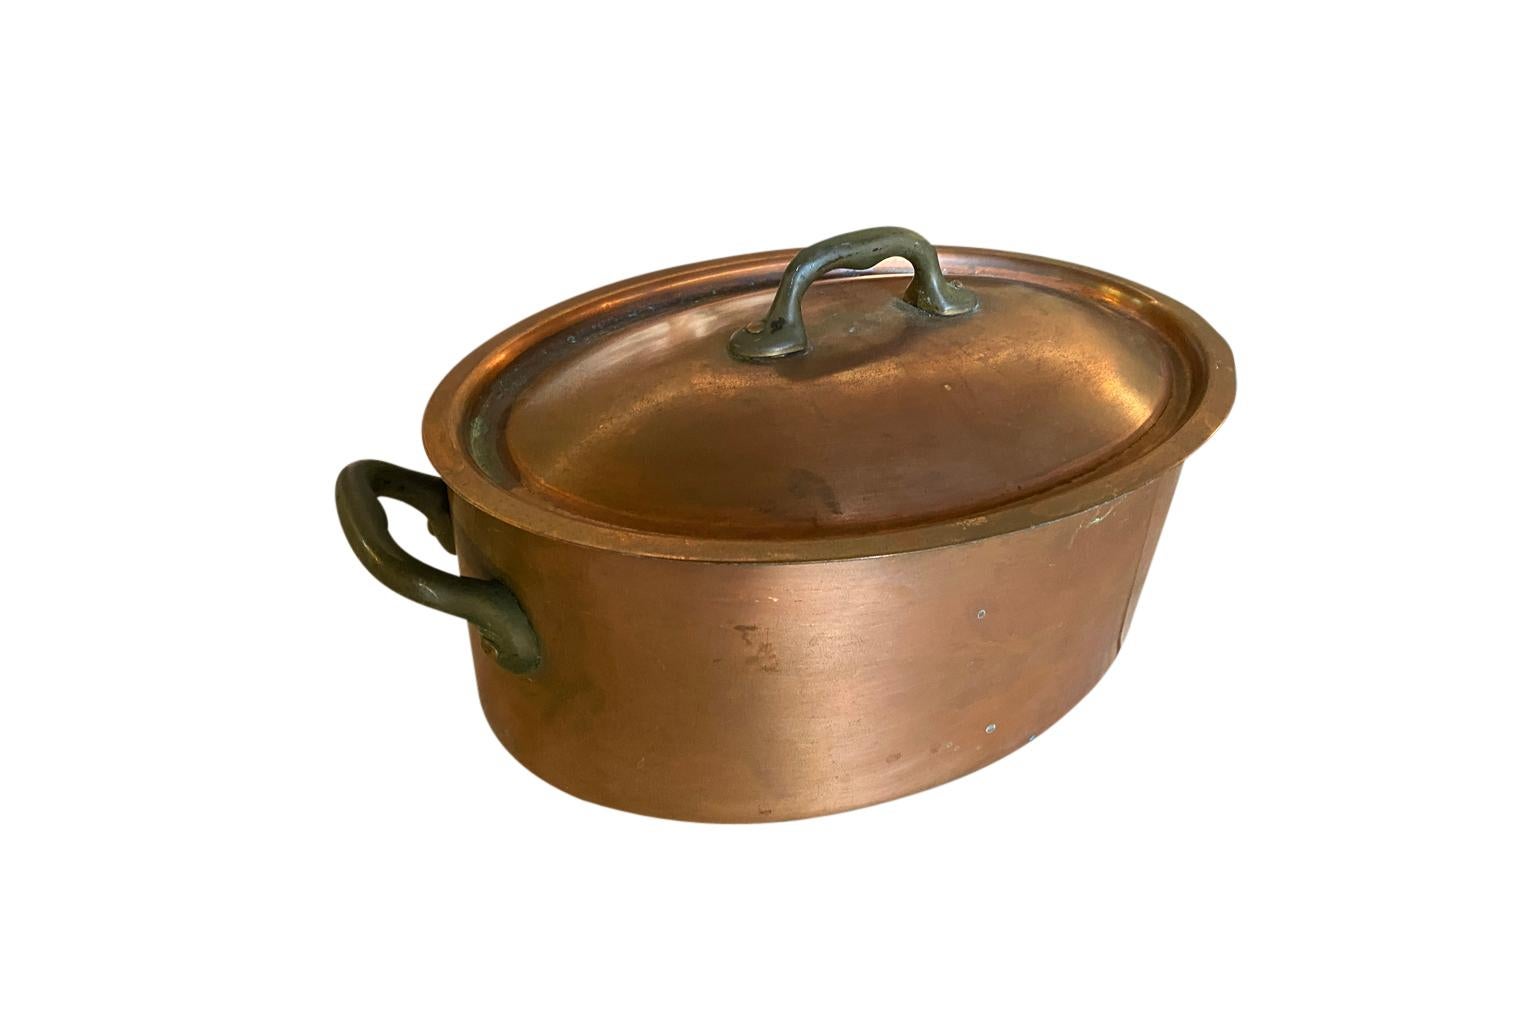 Un très charmant pot à couvercle en cuivre du début du 20e siècle, de forme ovale.  Une merveilleuse addition à toute collection de cuivre.